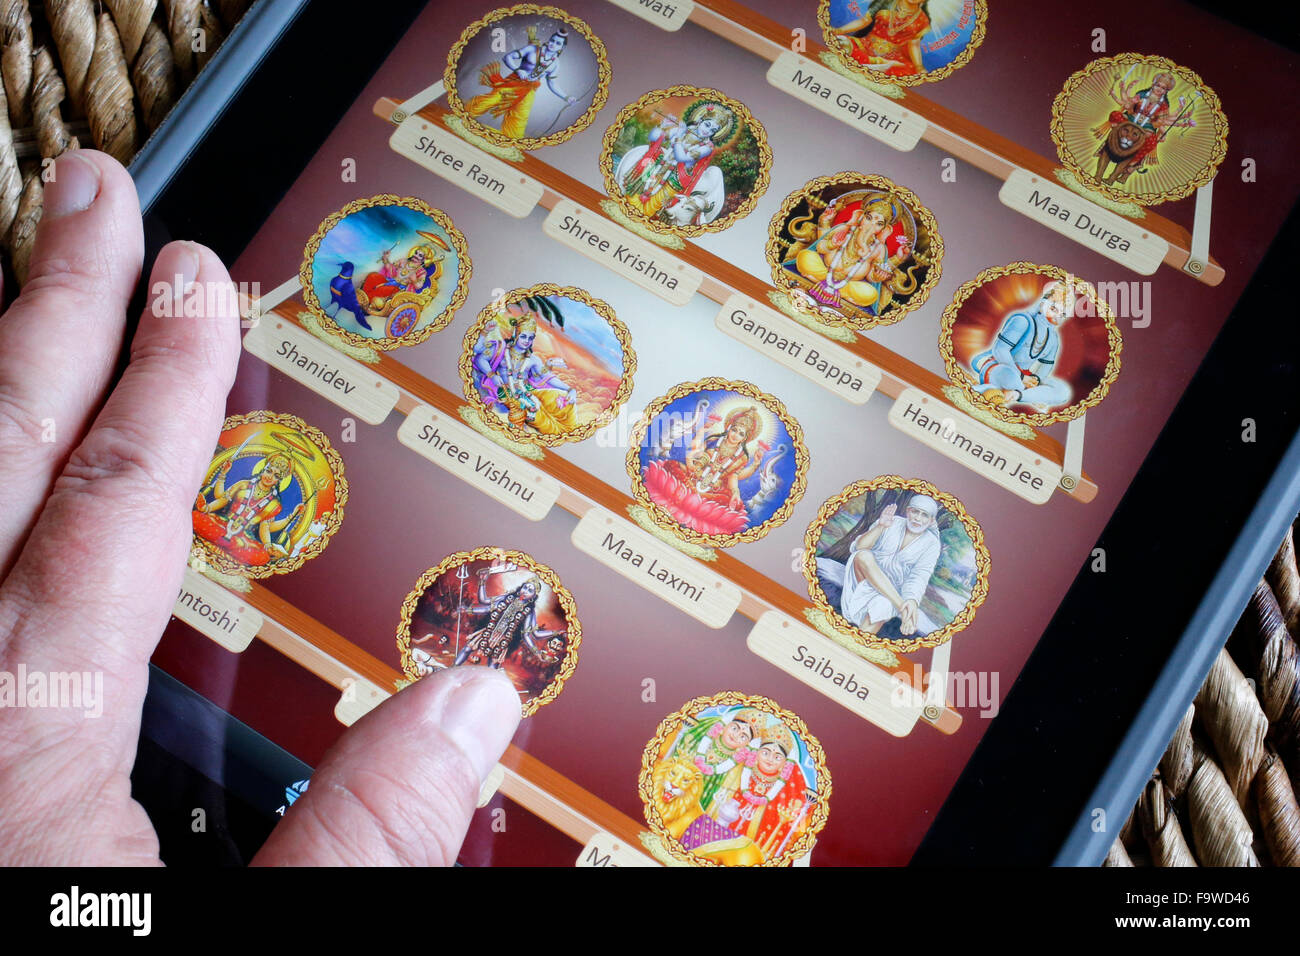 Hindu-Gottheiten auf einem Ipad. Stockfoto